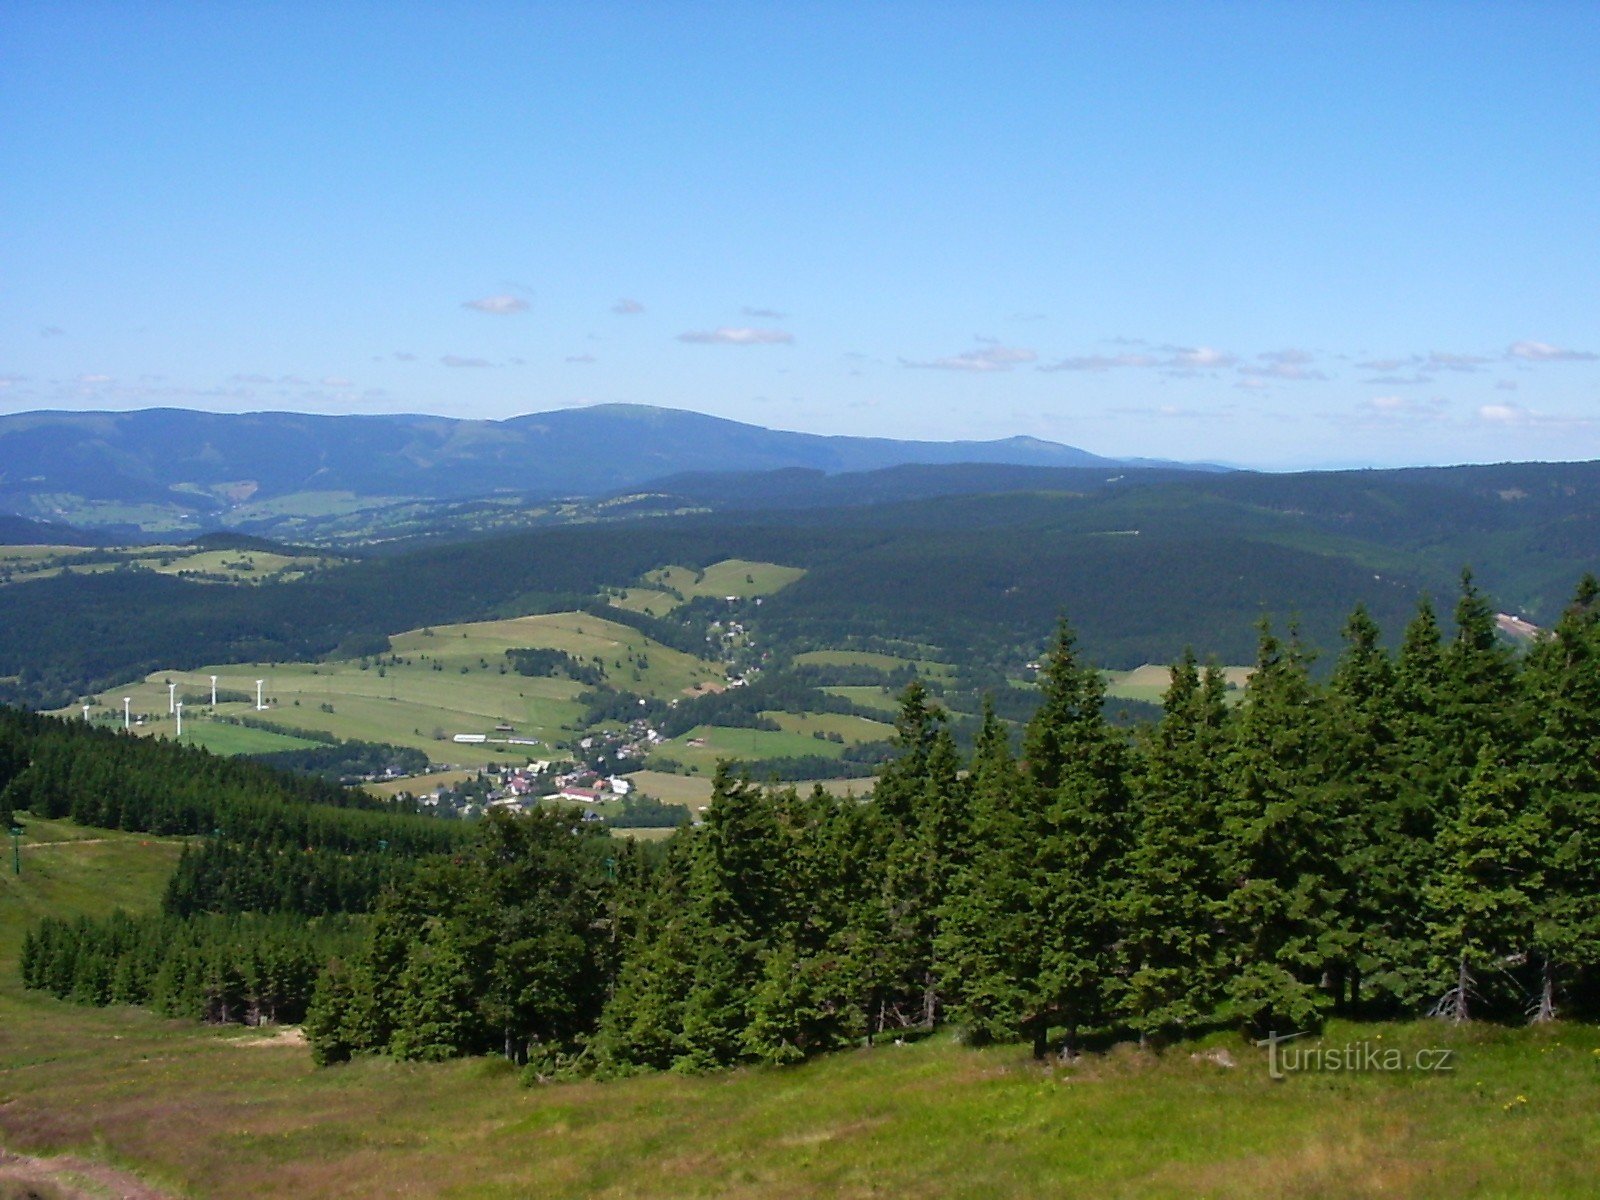 Het uitzicht langs de weg vanaf ongeveer halverwege Šerák